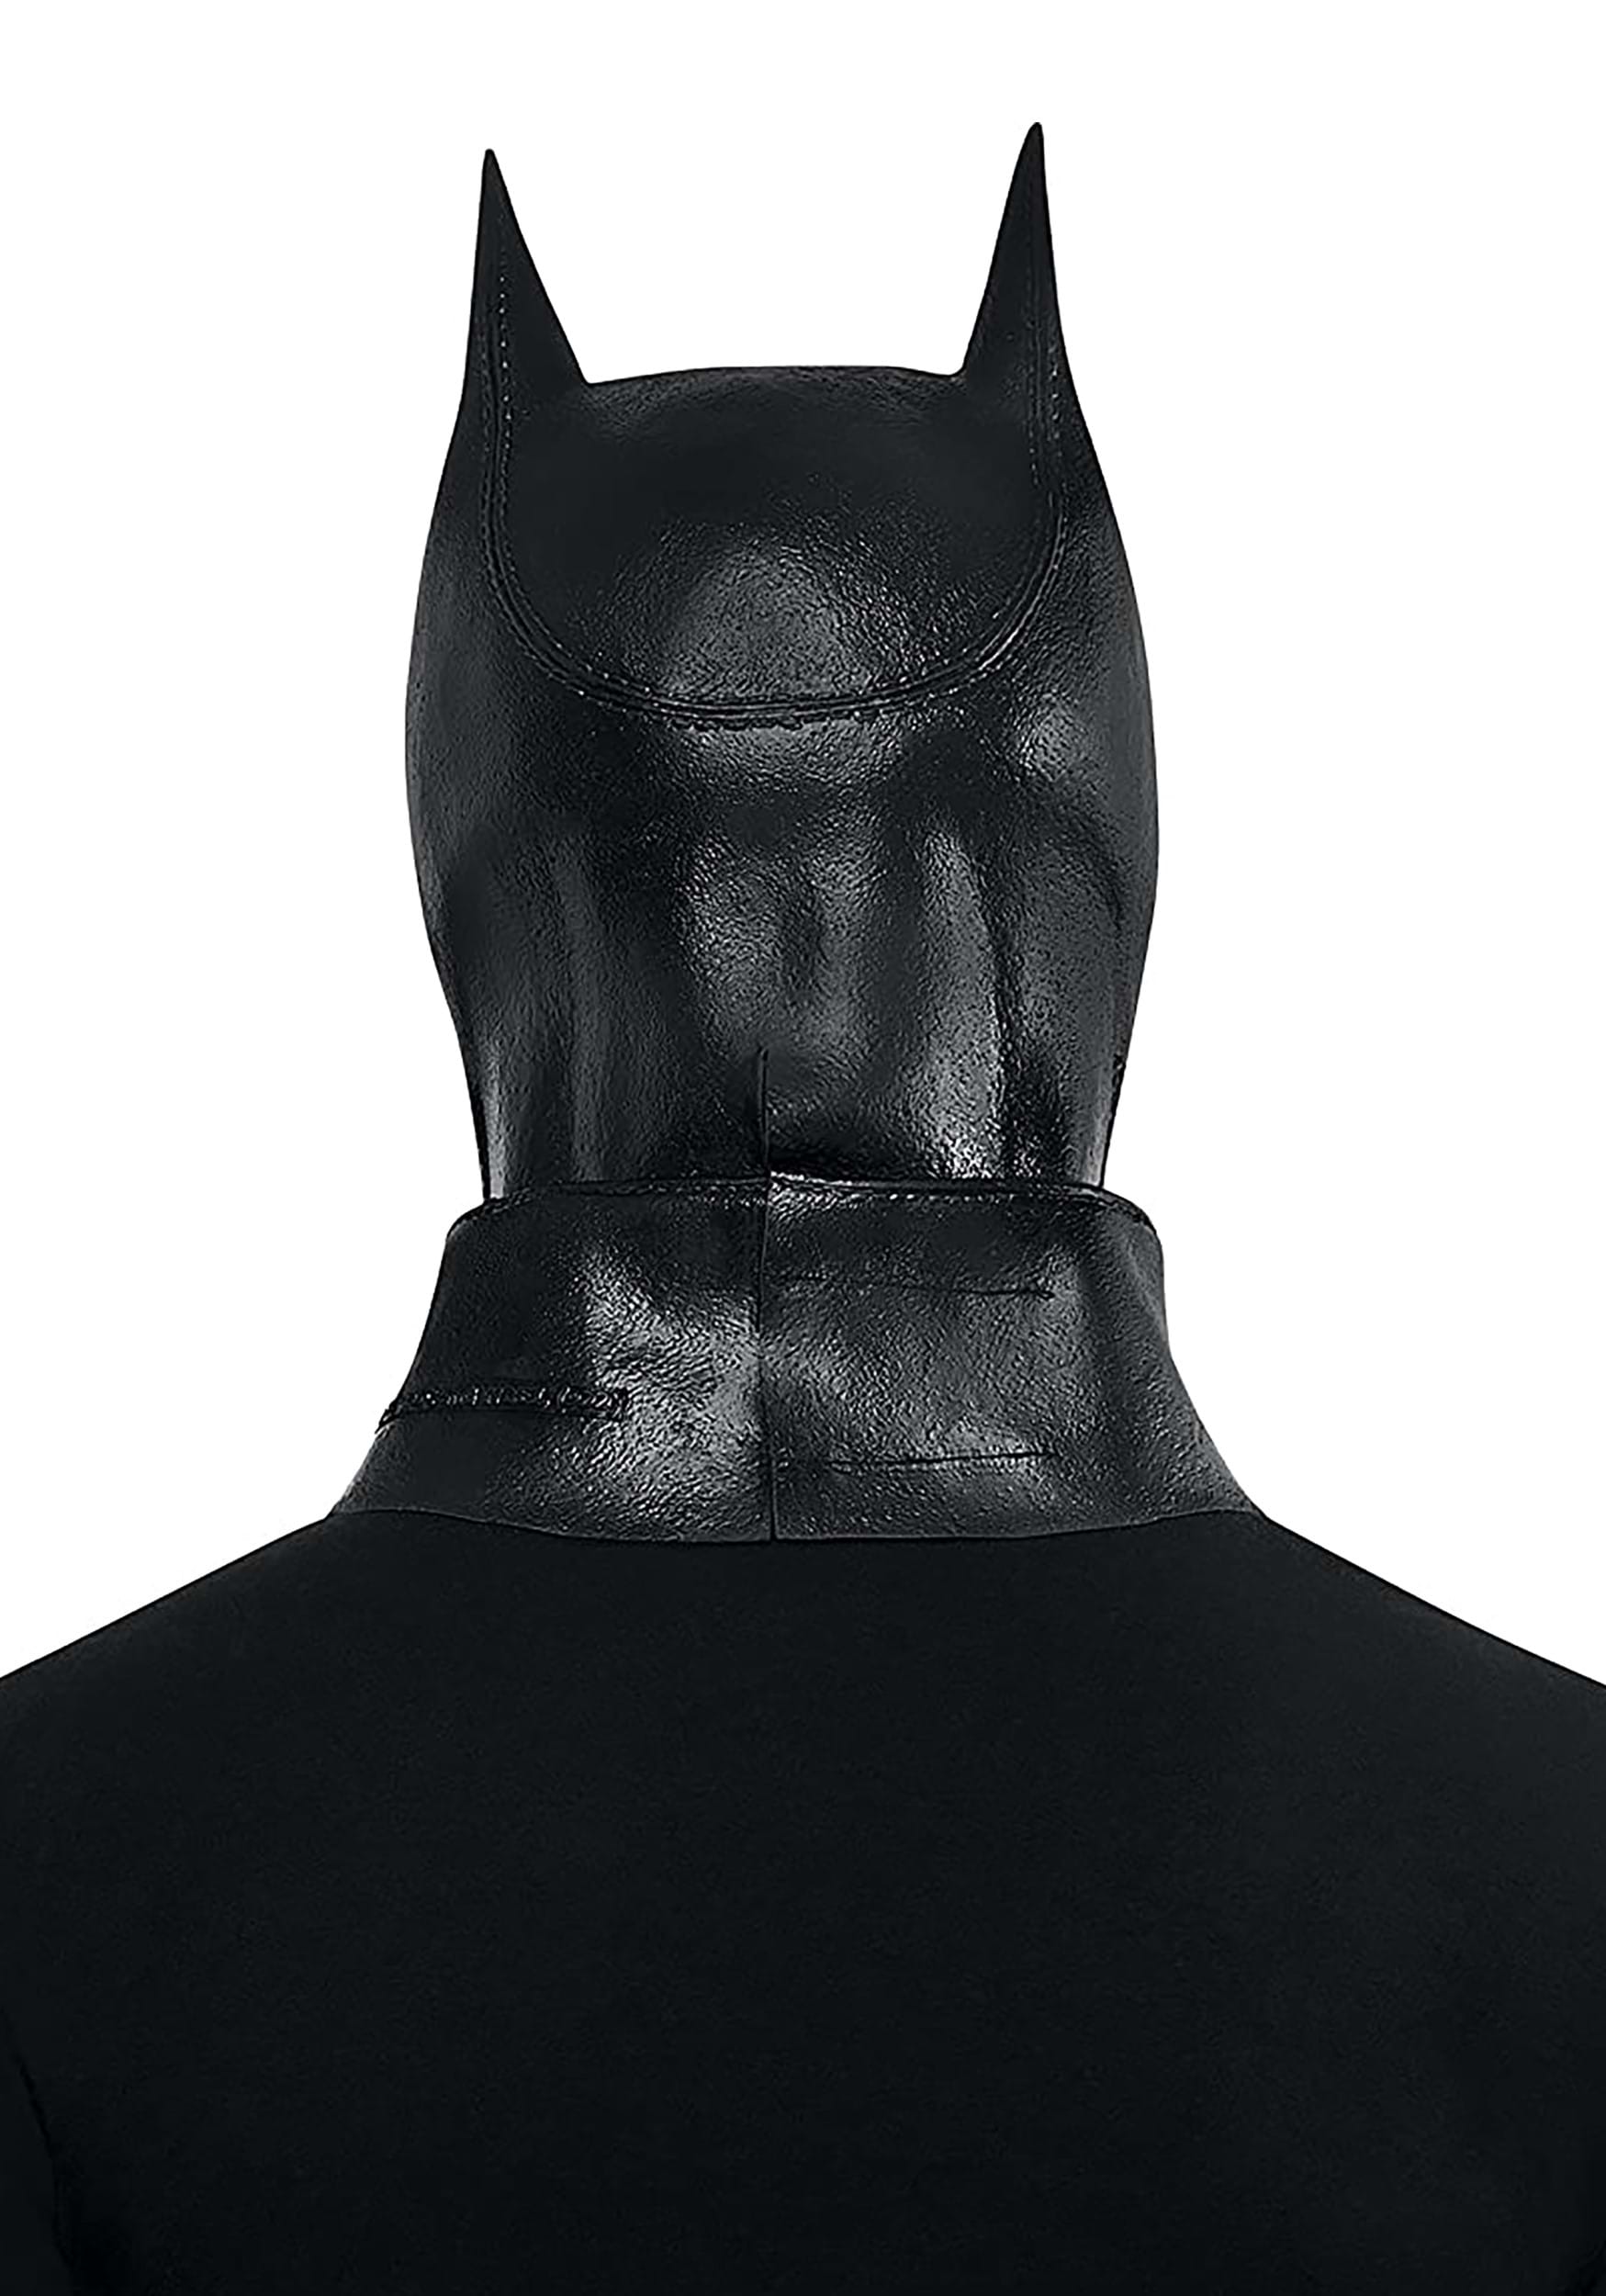 Adult Batman Latex Mask